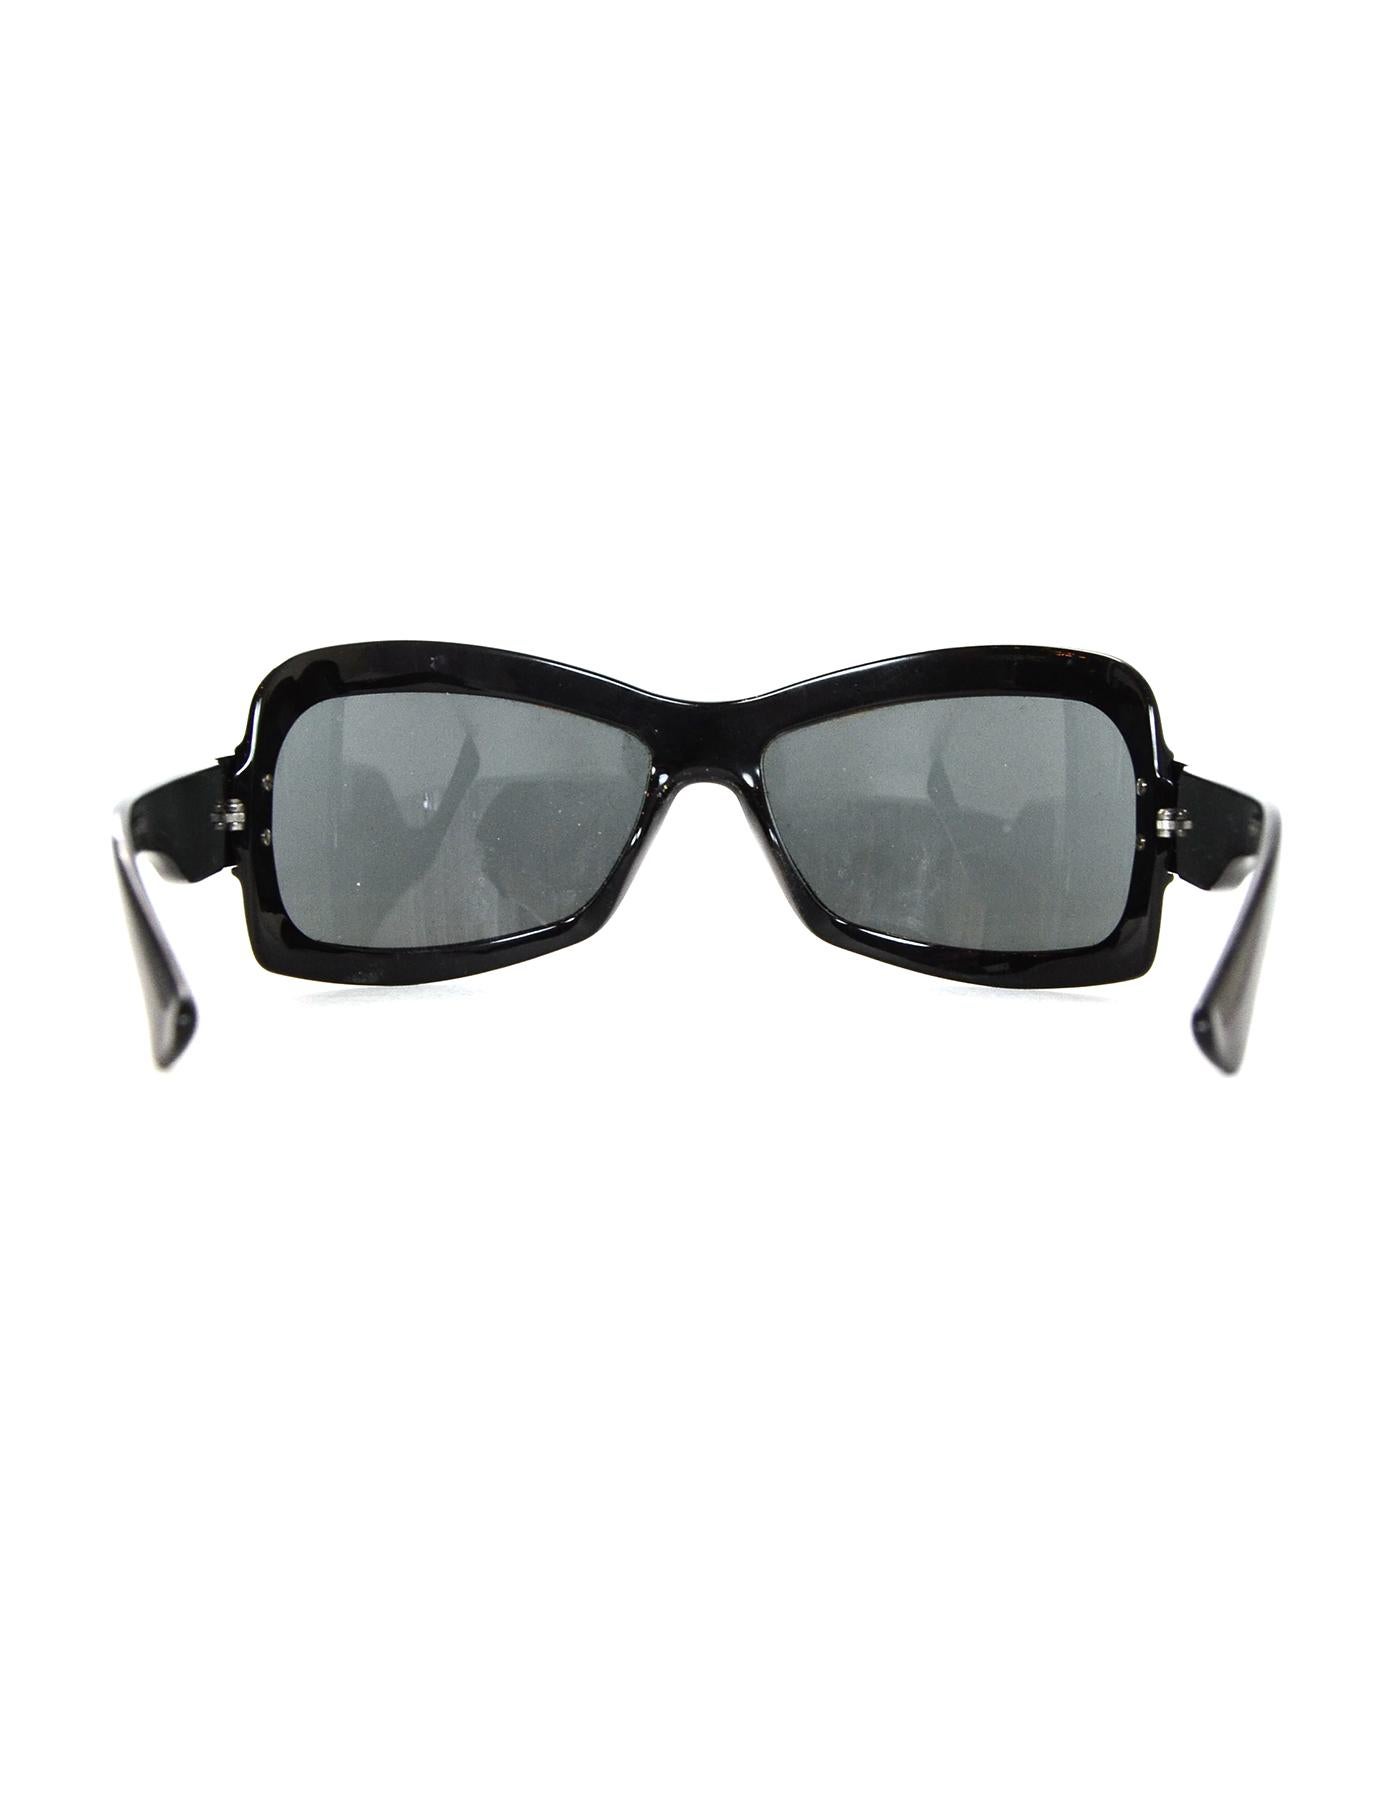 Gucci Black Sunglasses W/ Rhinestones On Arms & Case Damen